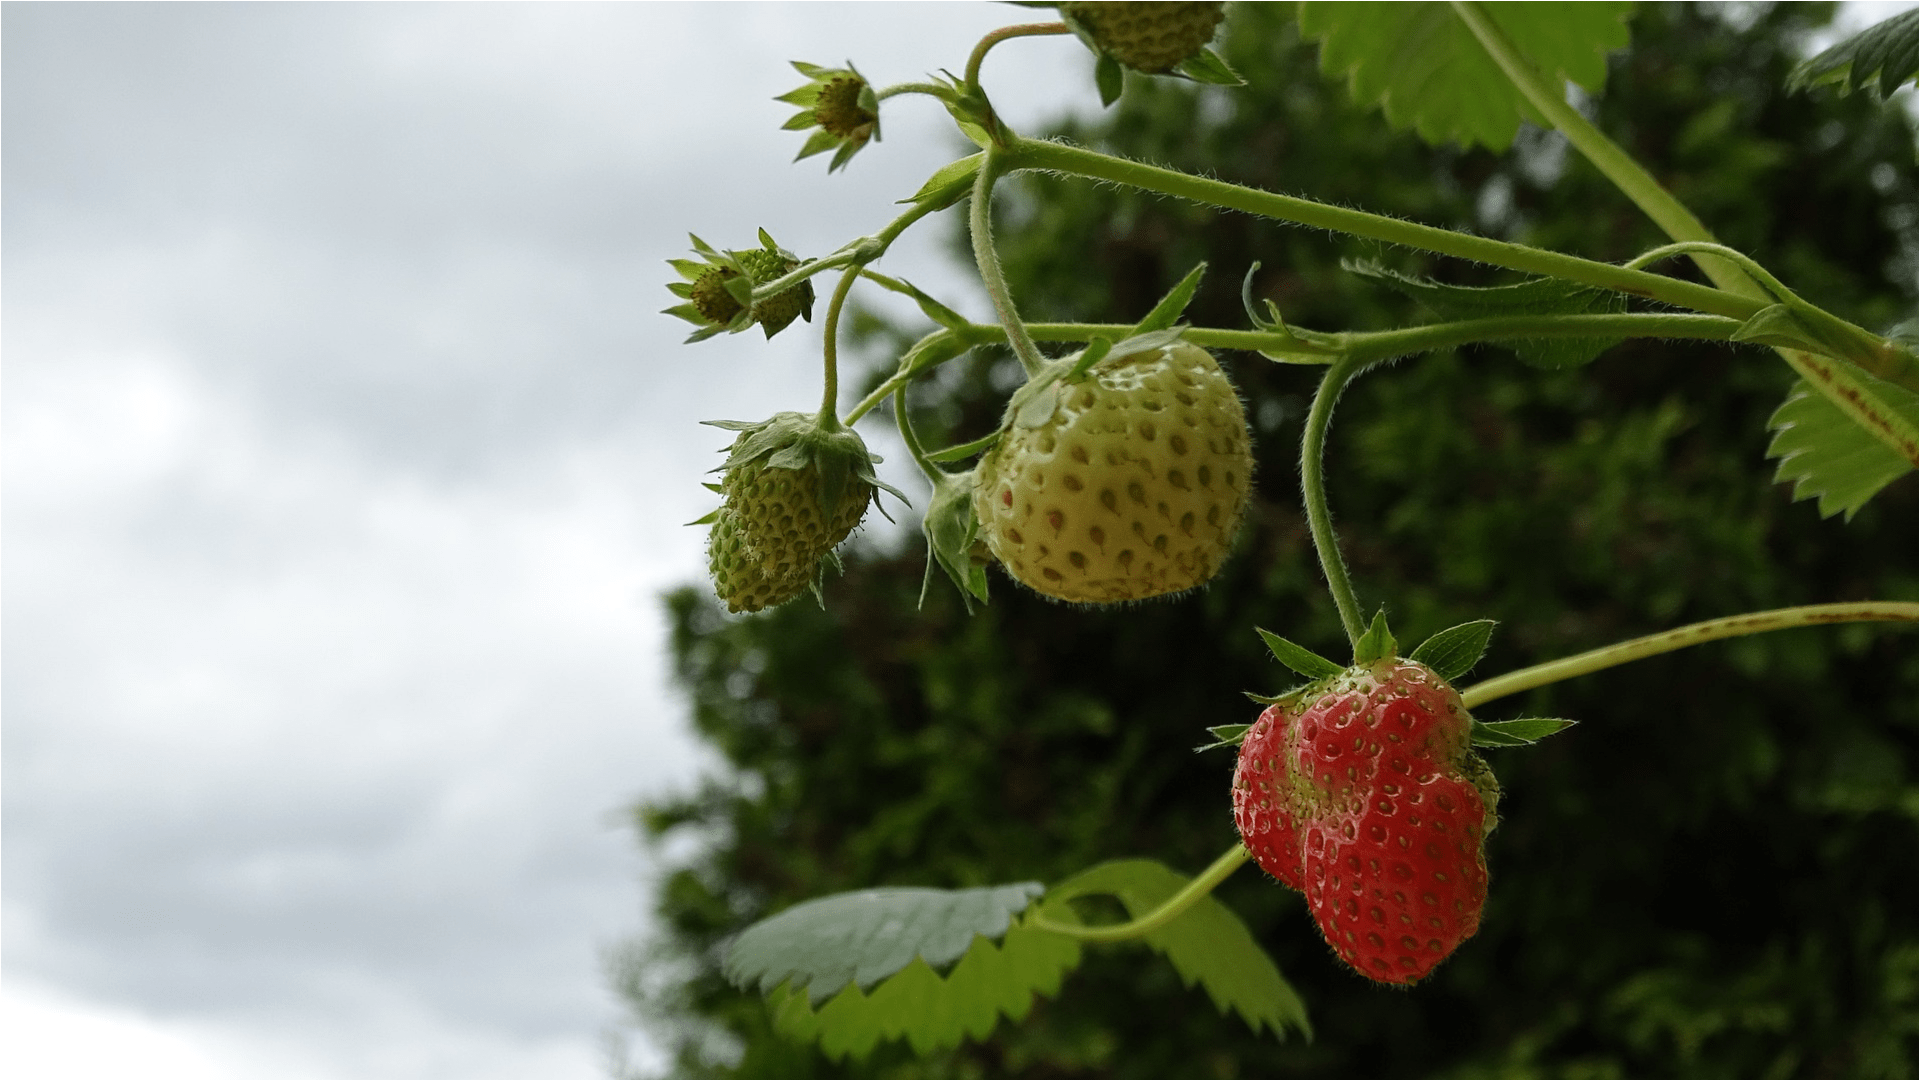 Erdbeerpflanze pflanzen - gute Tipps